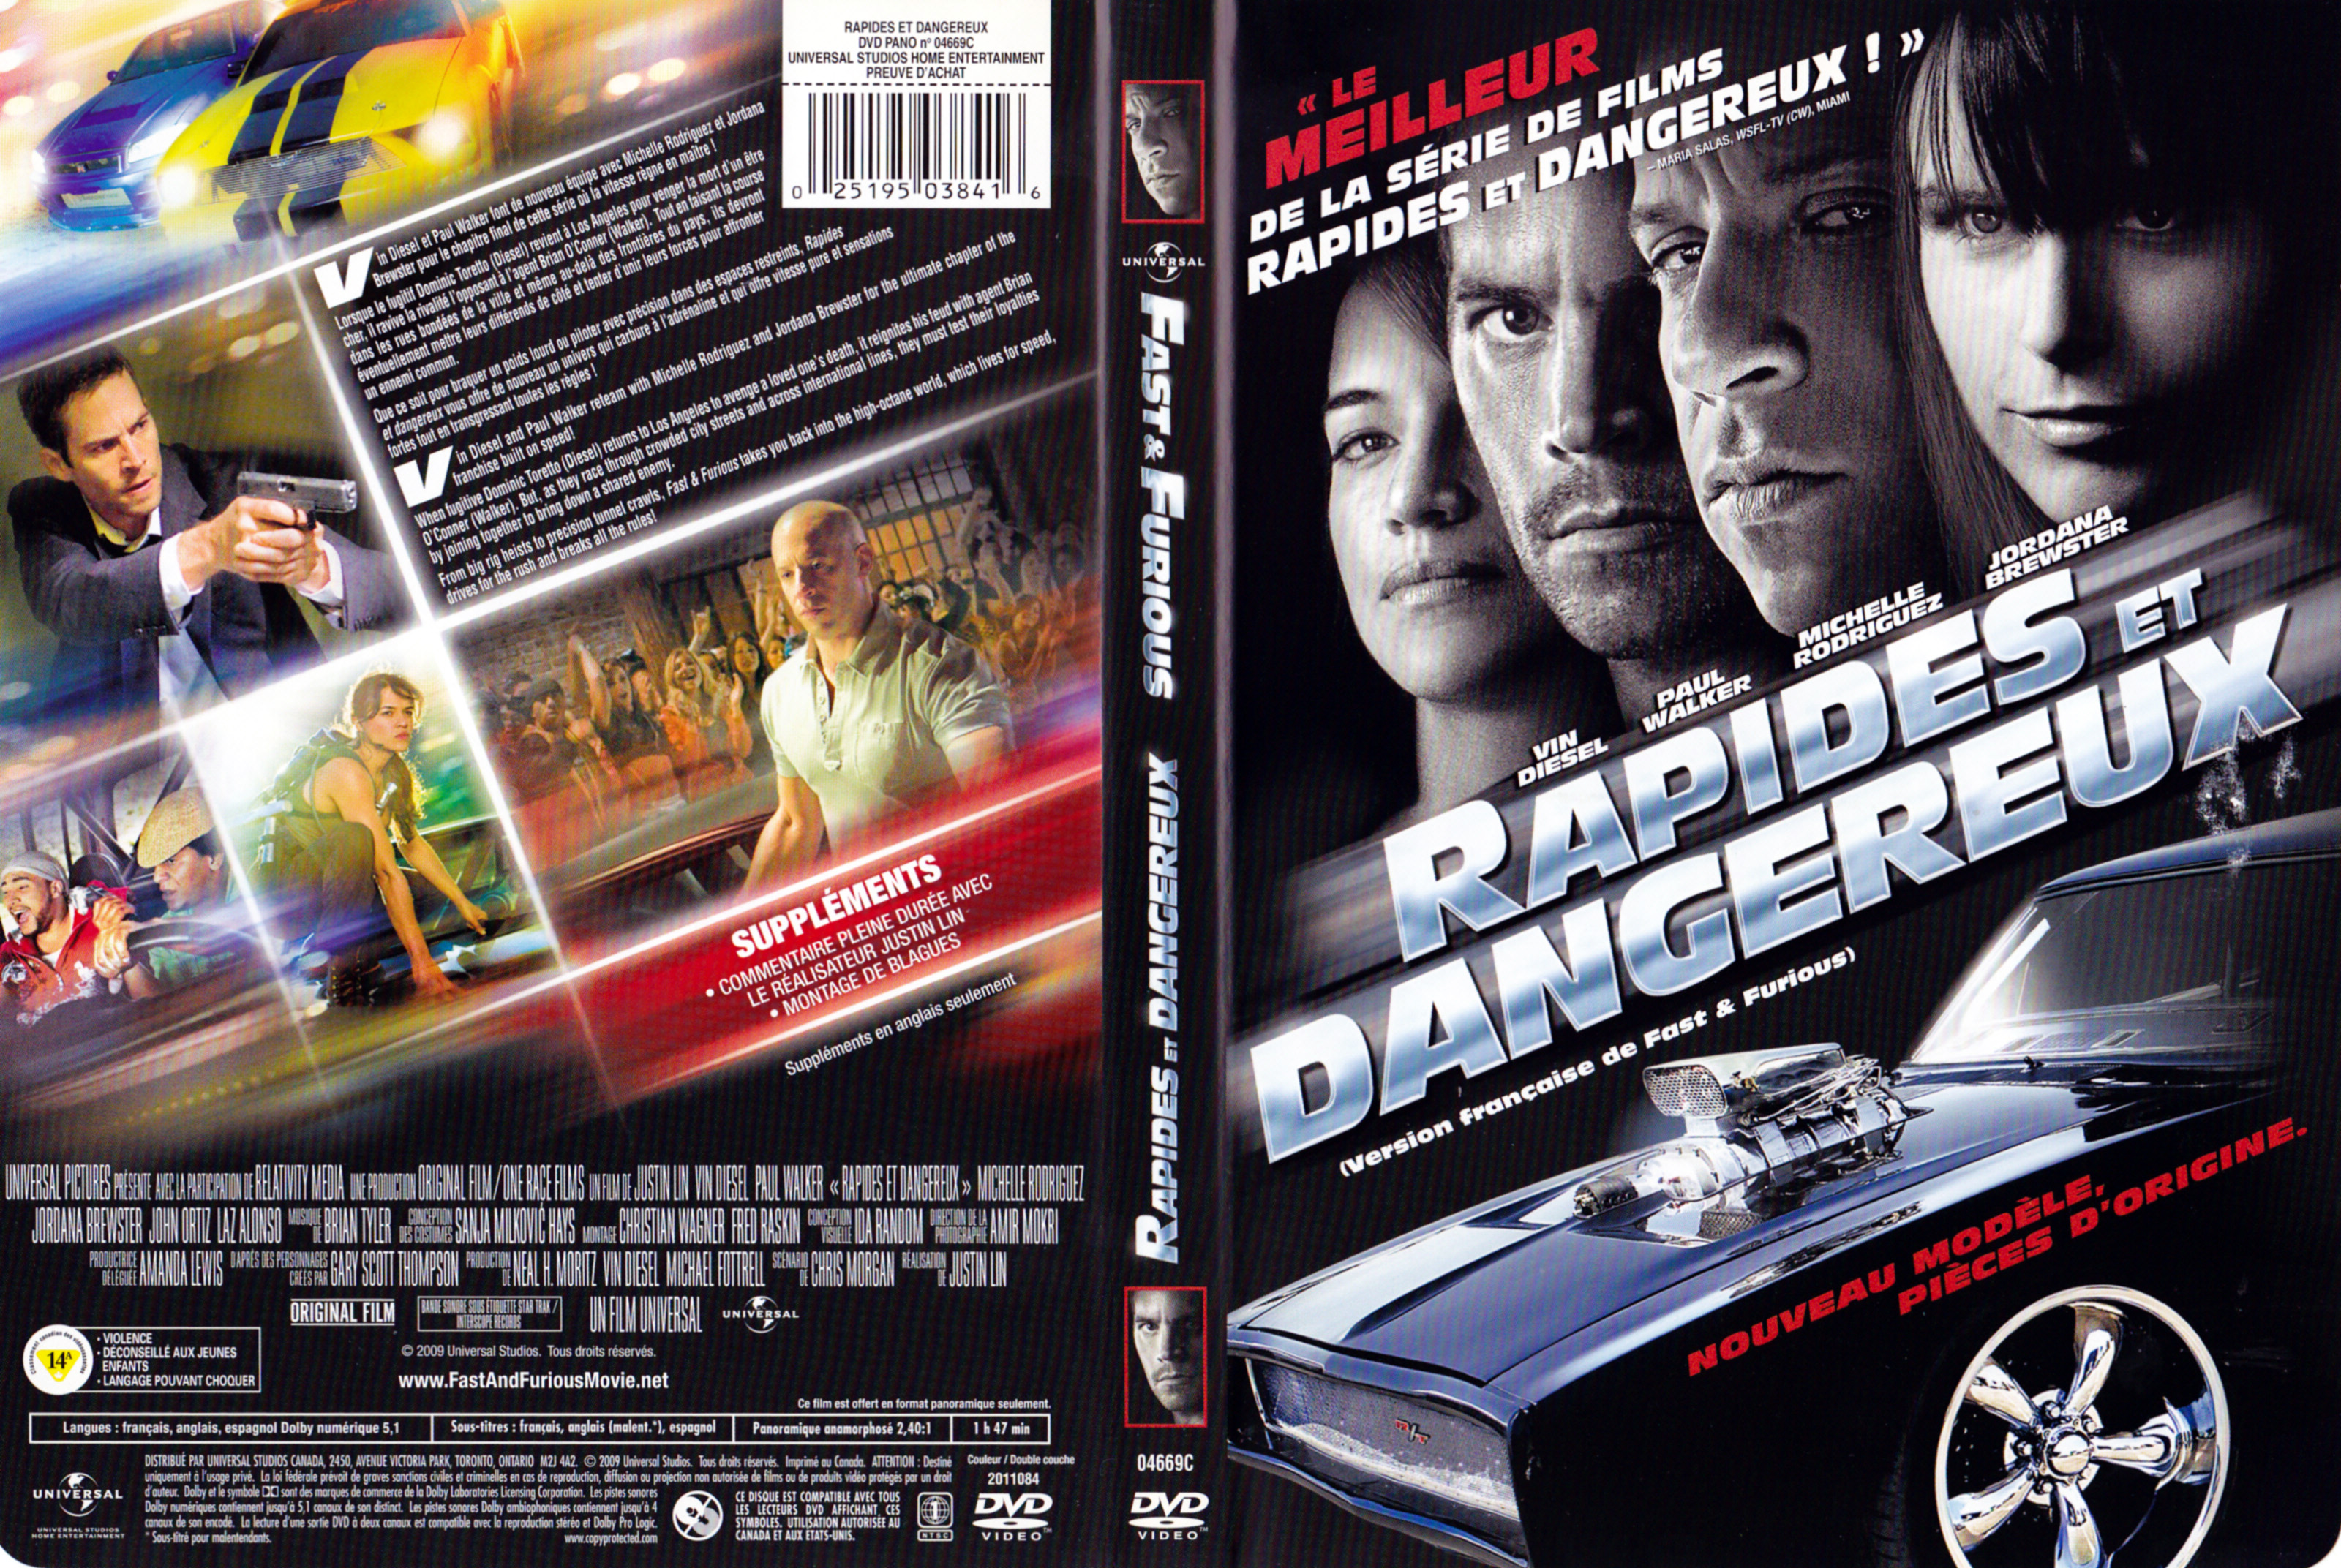 Jaquette DVD Rapides et dangereux - Fast and furious (Canadienne)